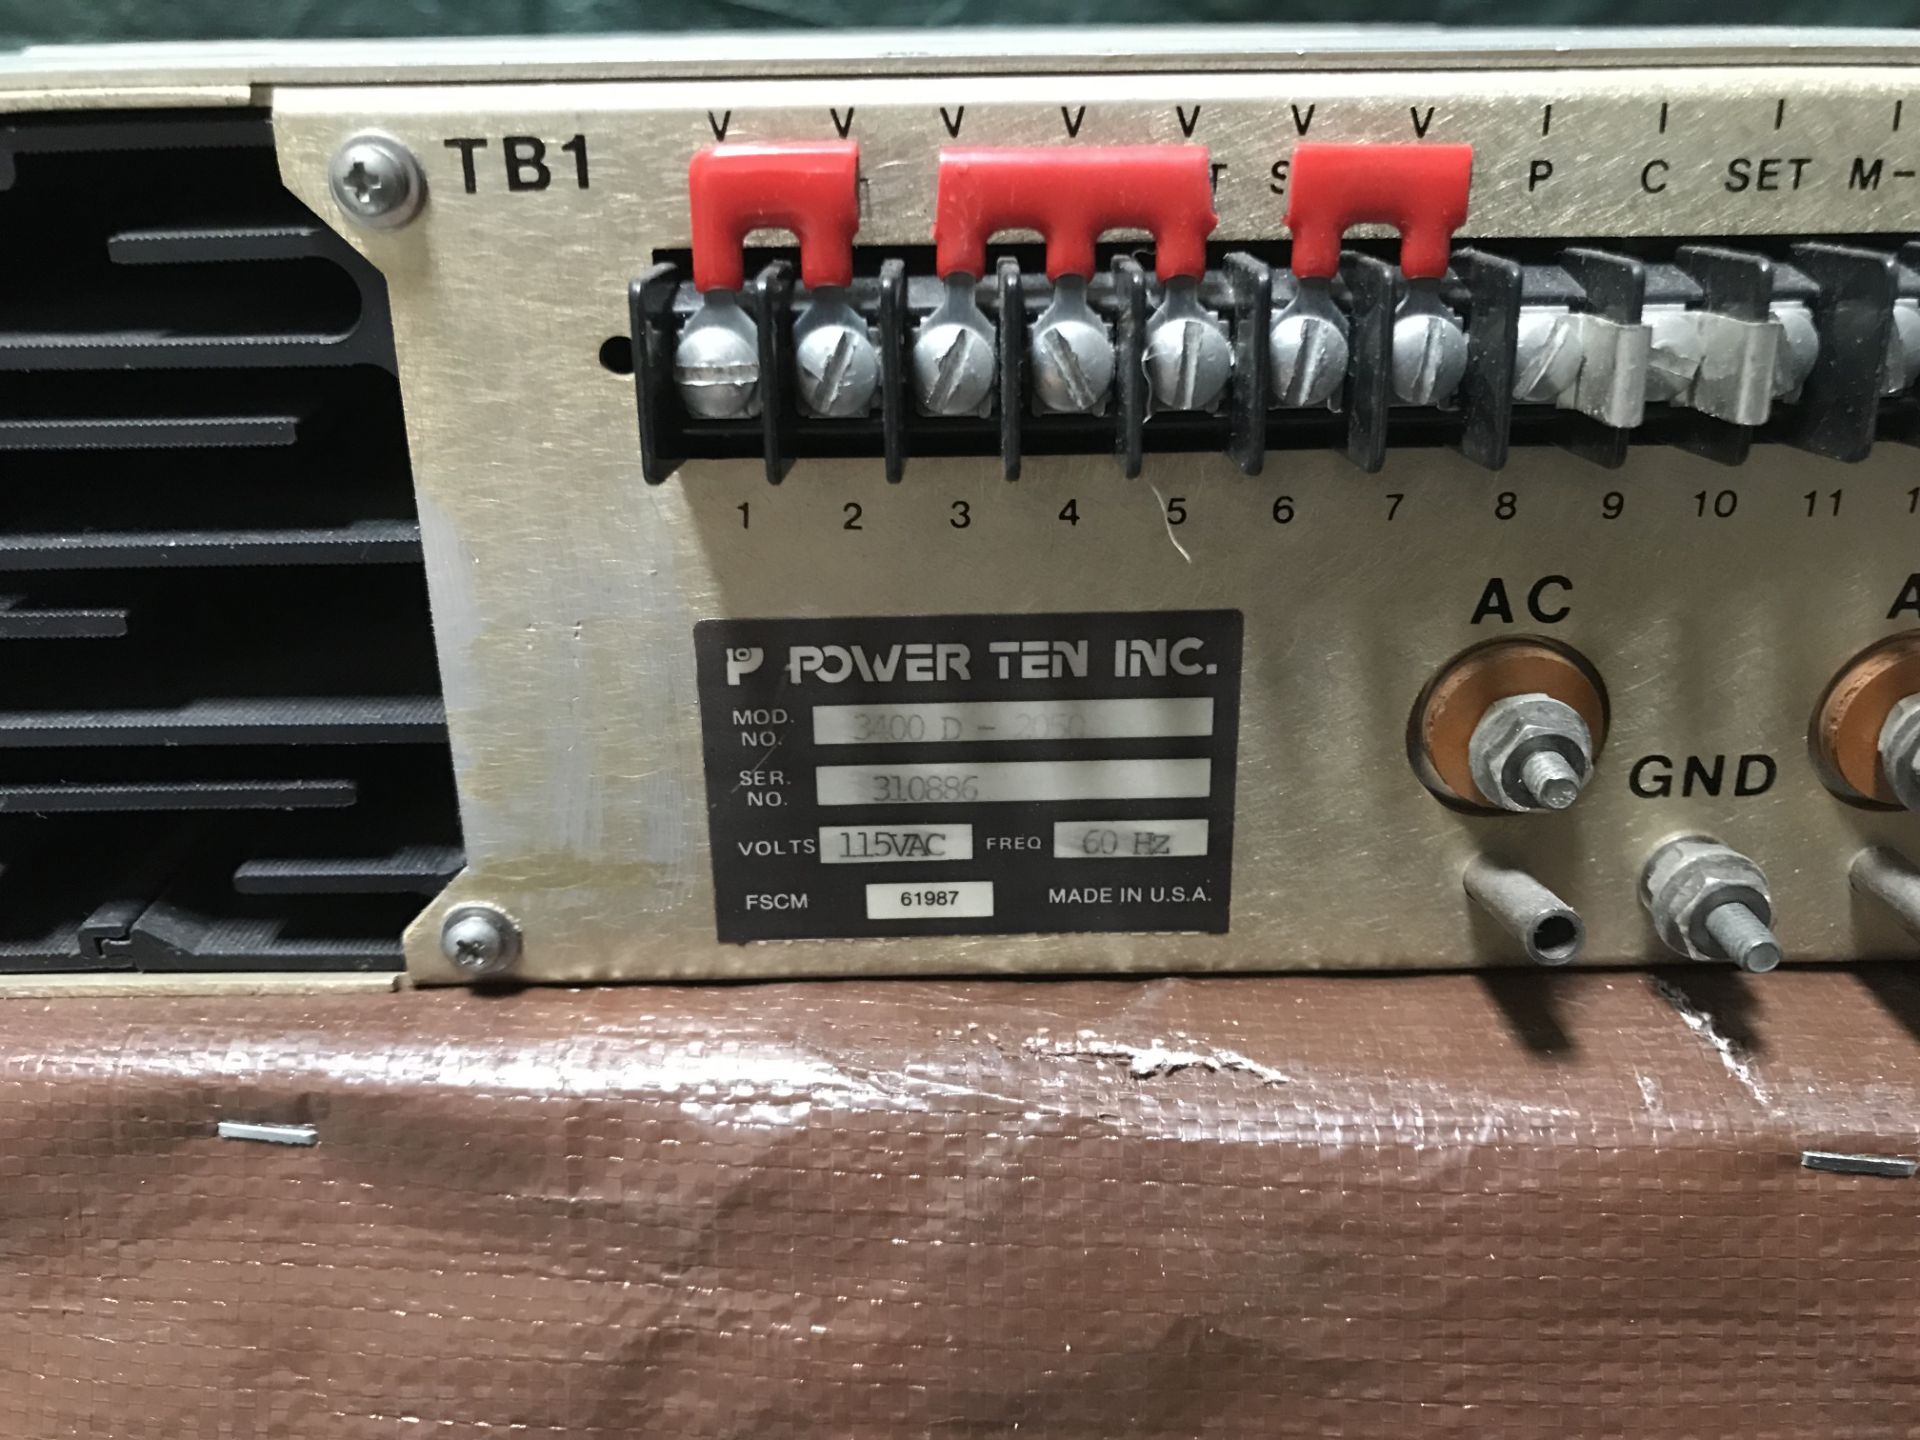 #076 Power Ten Inc. 3400D-2050, SN 310886, Input: 115VAC 60Hz, Output: 0-20VDC/0-50Amps - Image 5 of 7